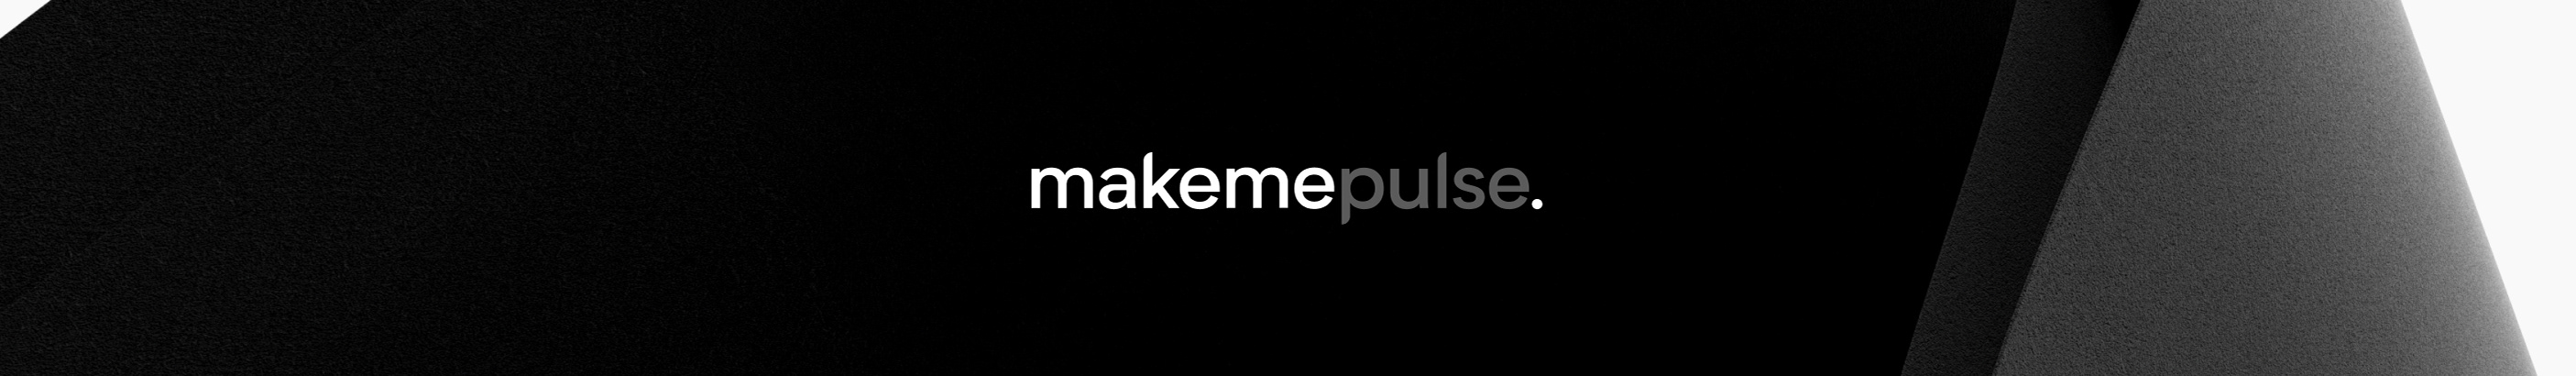 makemepulse ‎'s profile banner